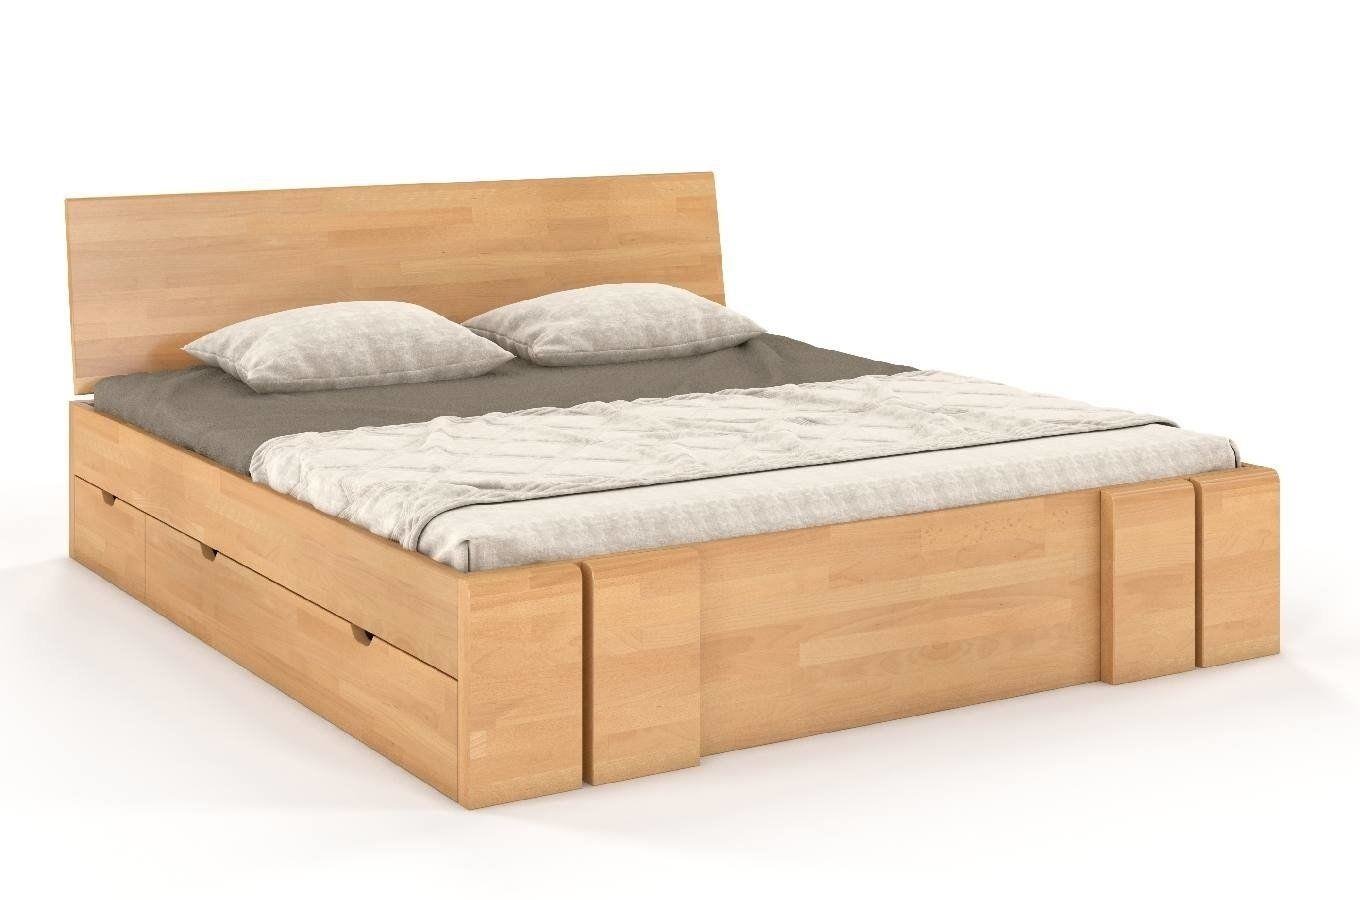 Łóżko drewniane bukowe z szufladami Skandica VESTRE Maxi & DR / 140x200 cm, kolor naturalny